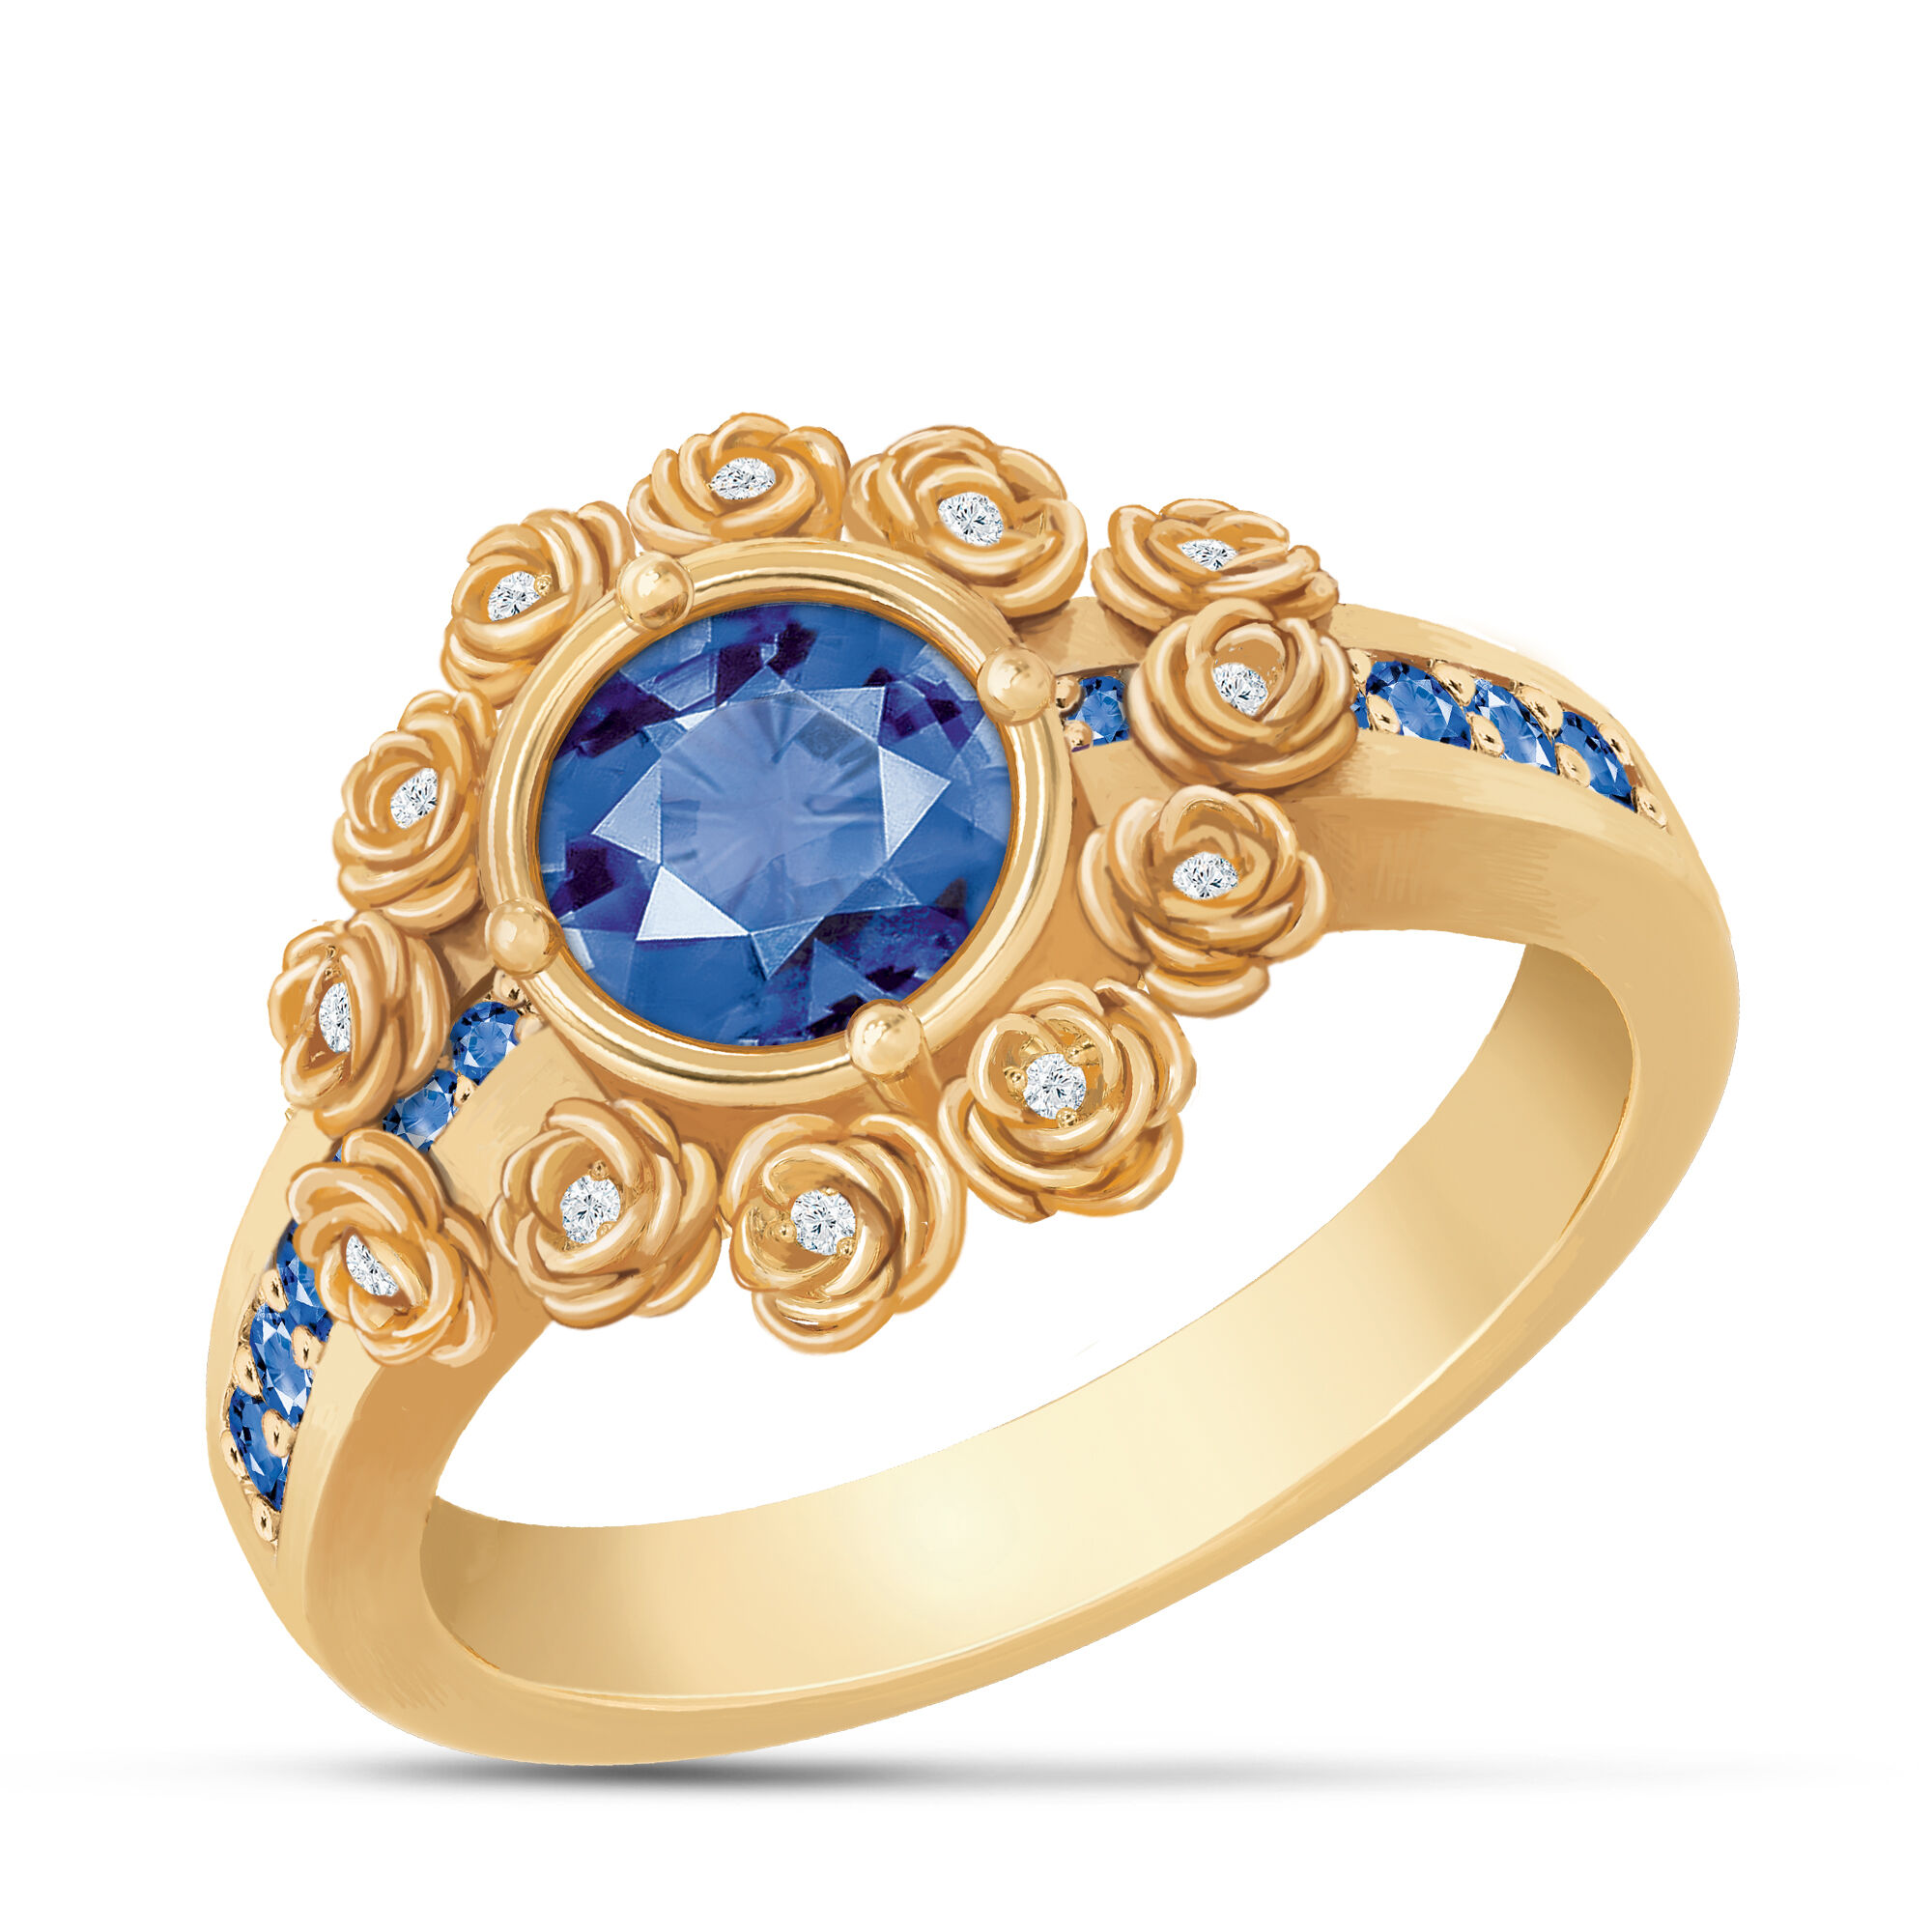 A Dozen Roses Birthstone Diamond Ring 6874 0018 i september